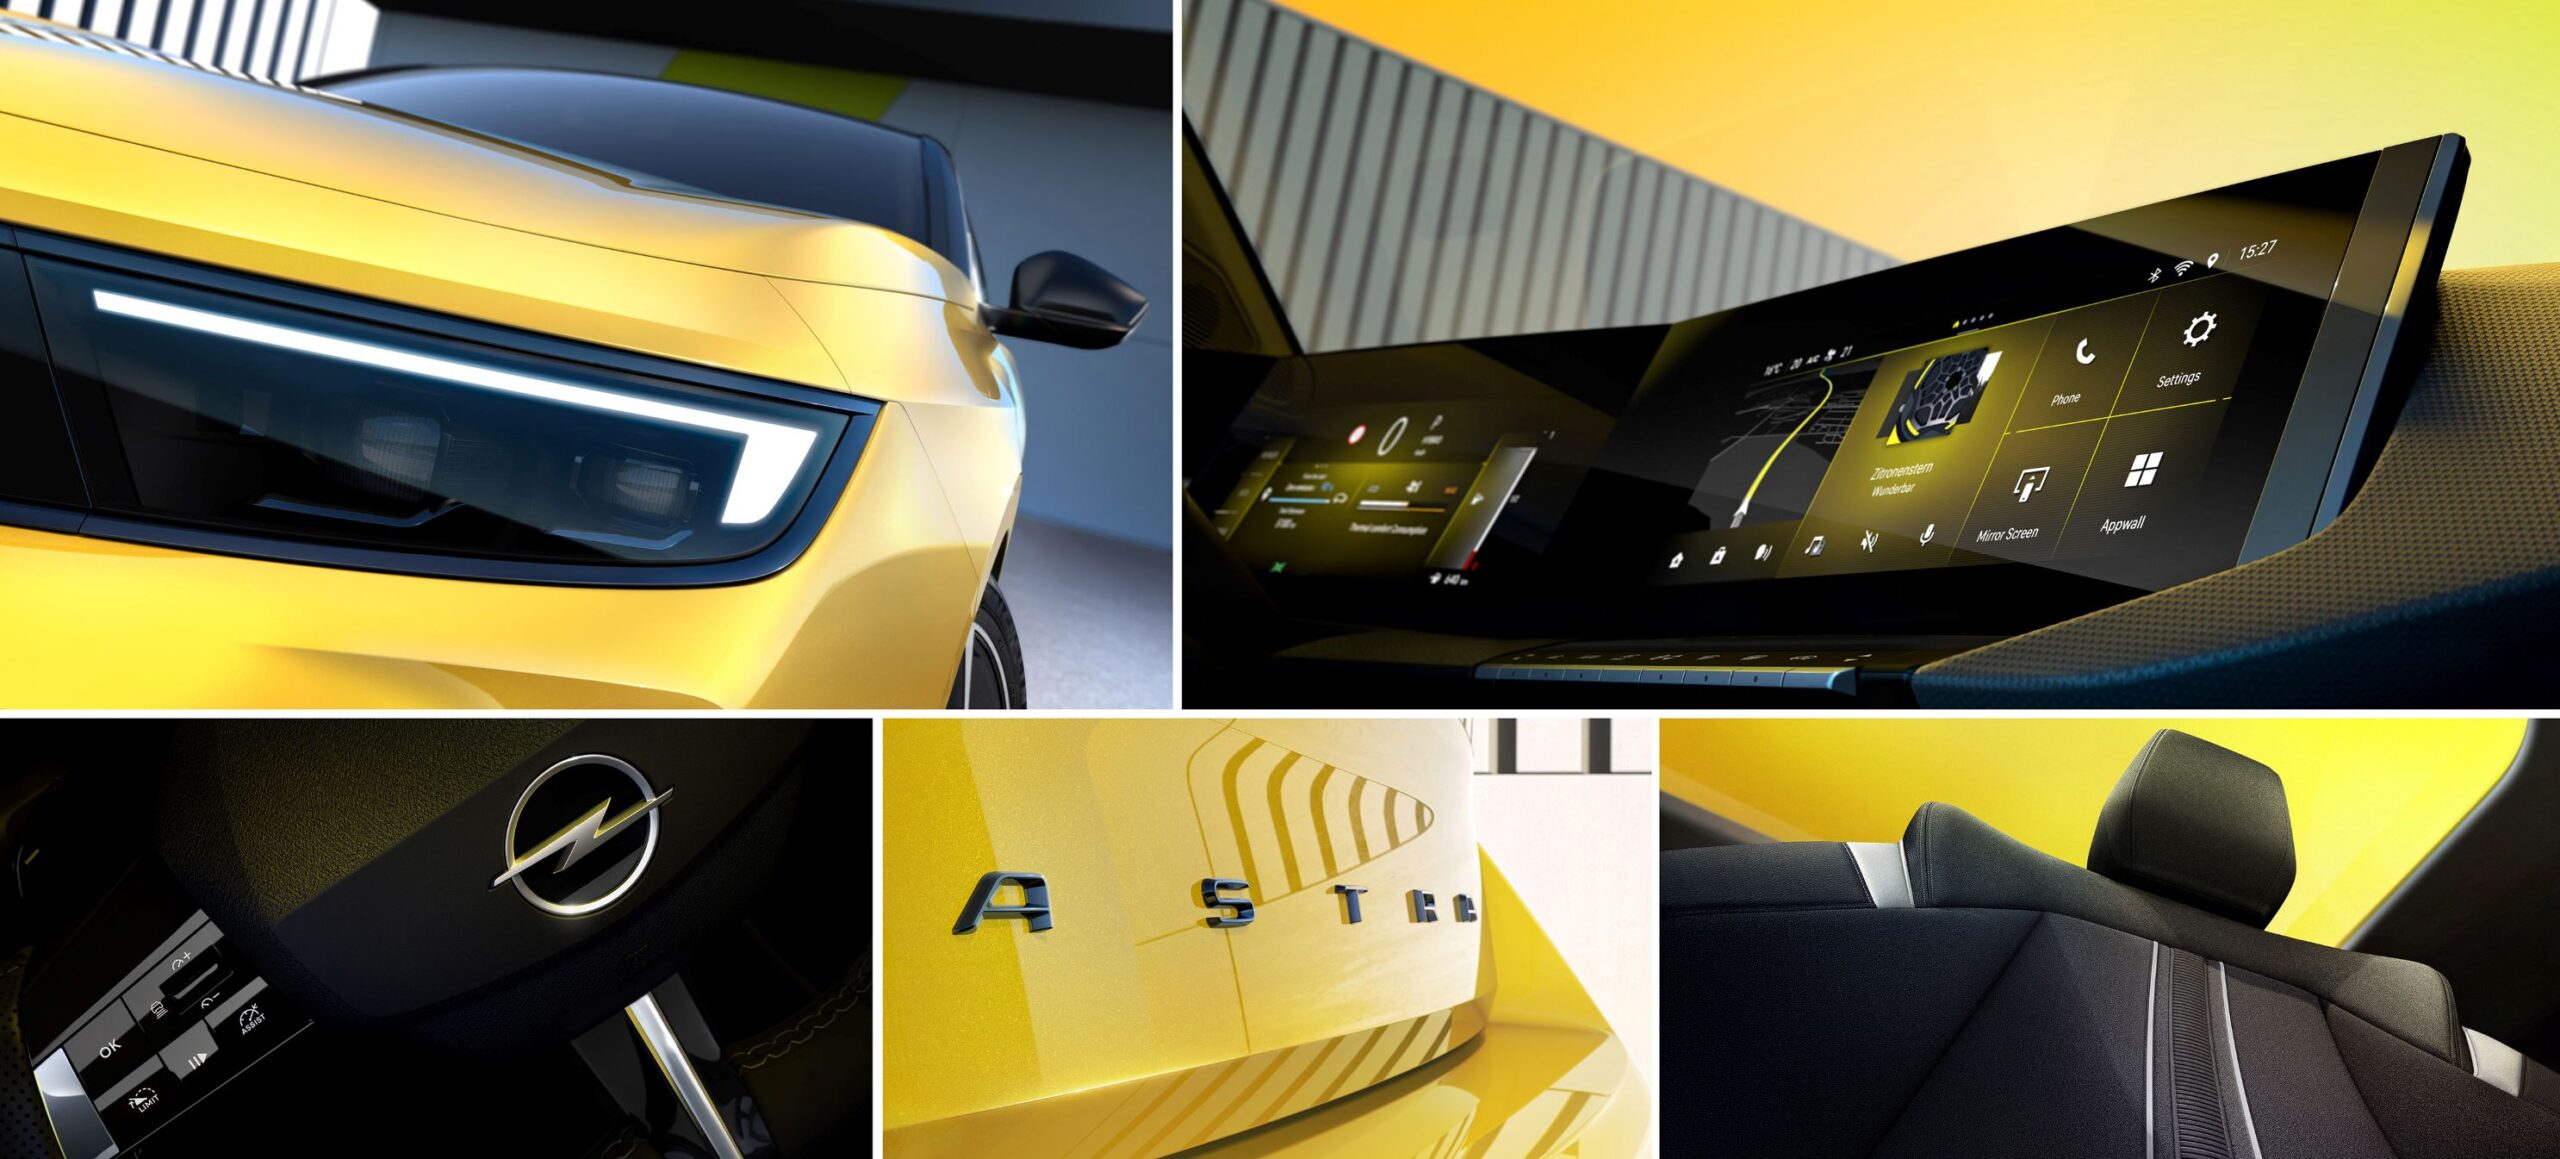 Πρώτες εικόνες του μελλοντικού Opel Astra